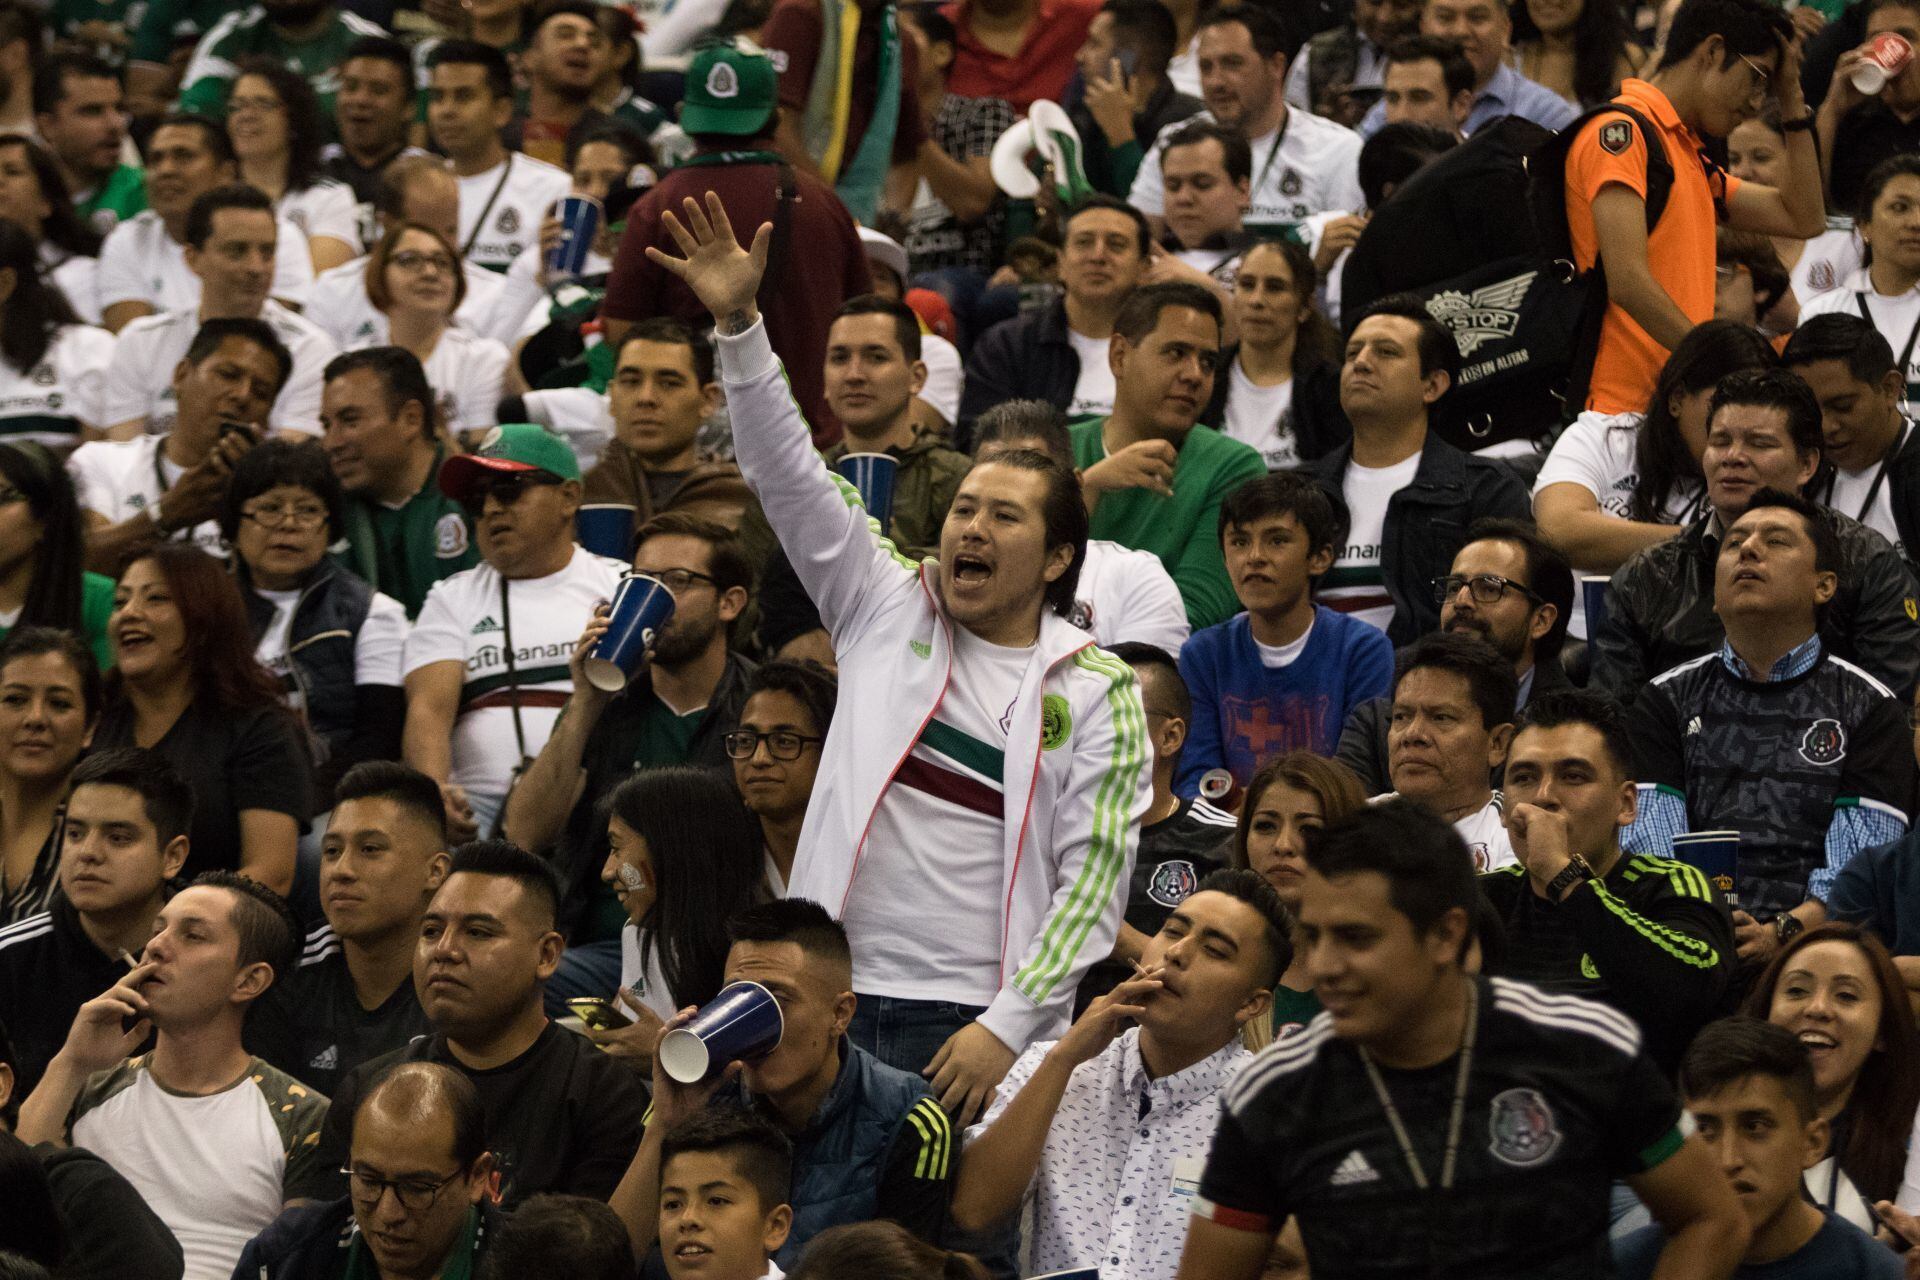 El concurso pondrá a prueba la creatividad de las y los mexicanos para demostrar su apoyo al equipo tricolor. (FOTO: MOISÉS PABLO /CUARTOSCURO)